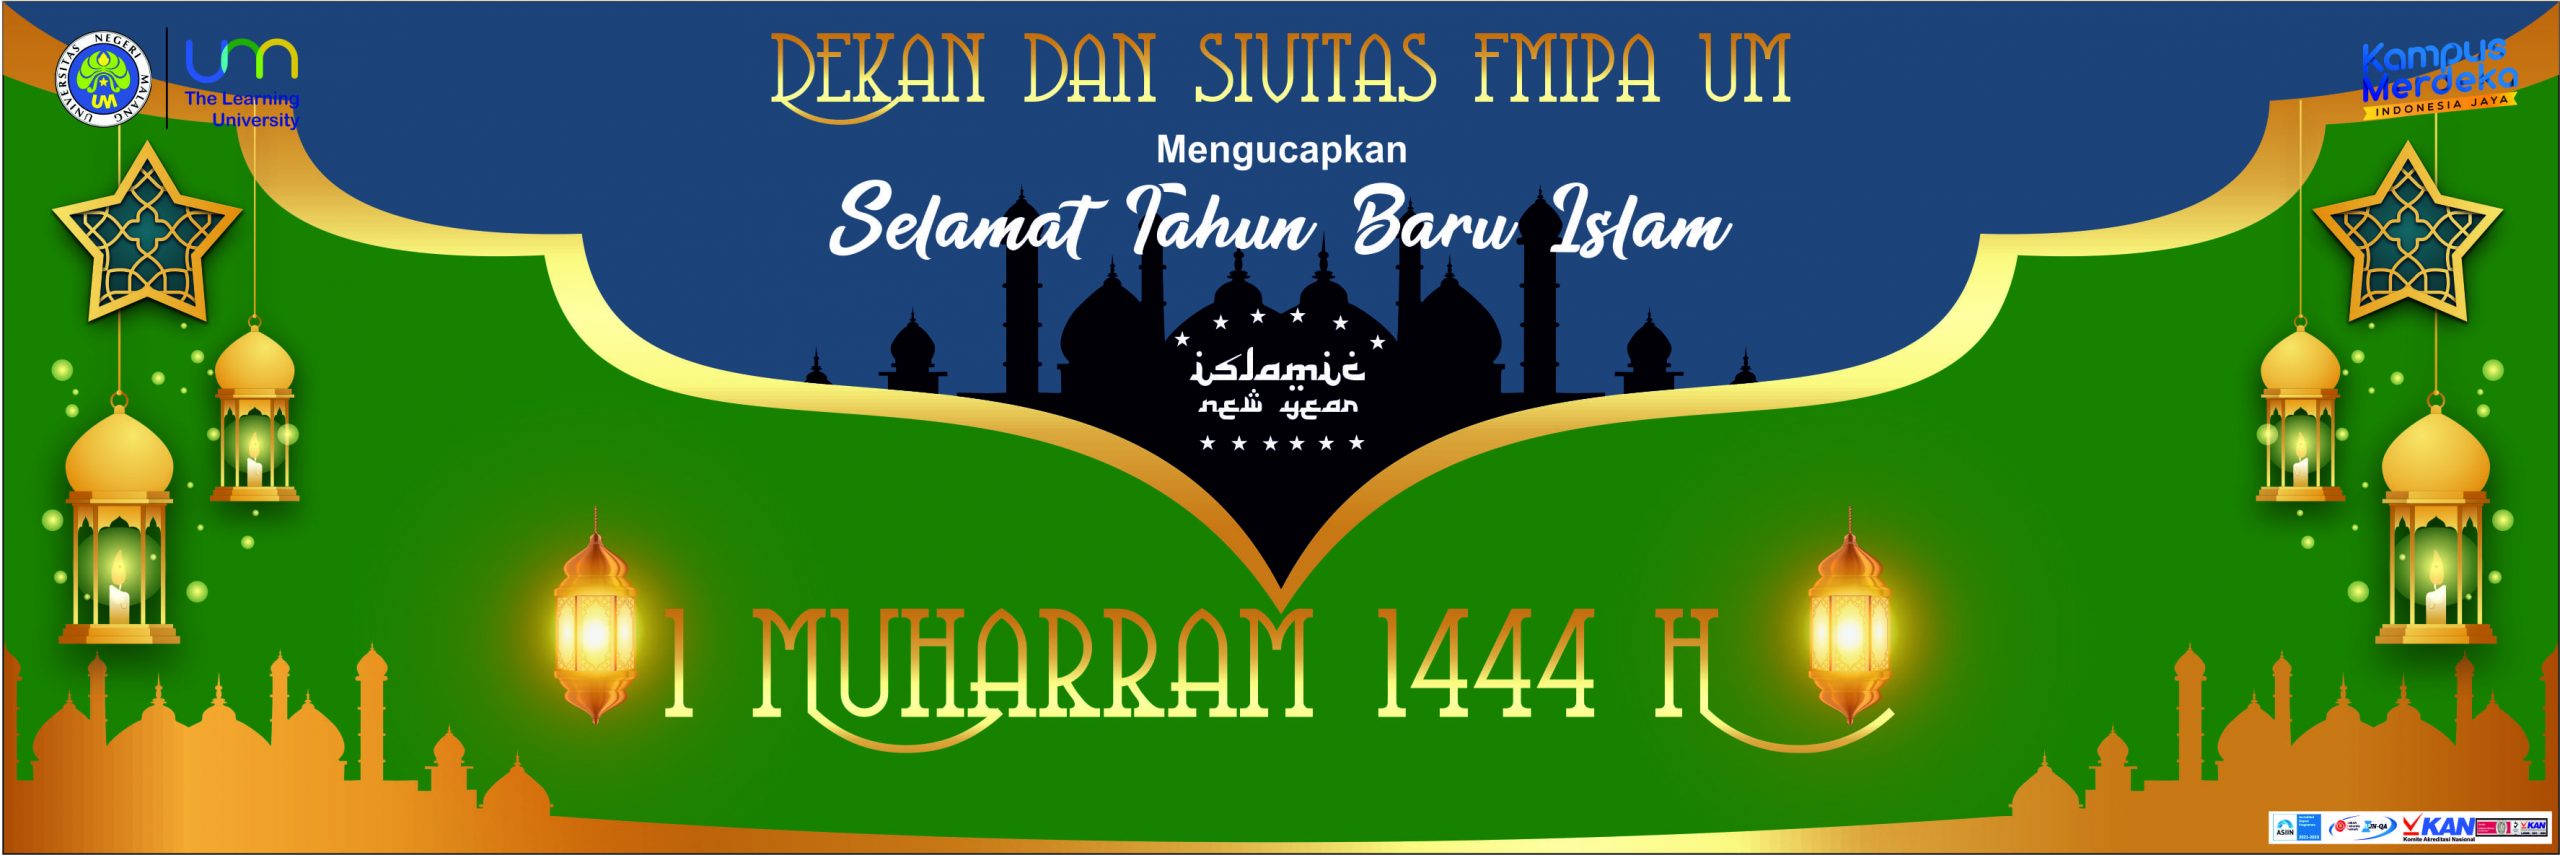 Dekan dan Sivitas FMIPA UM Mengucapkan Selamat memperingati Tahun Baru Islam 1 Muharram 1444 H